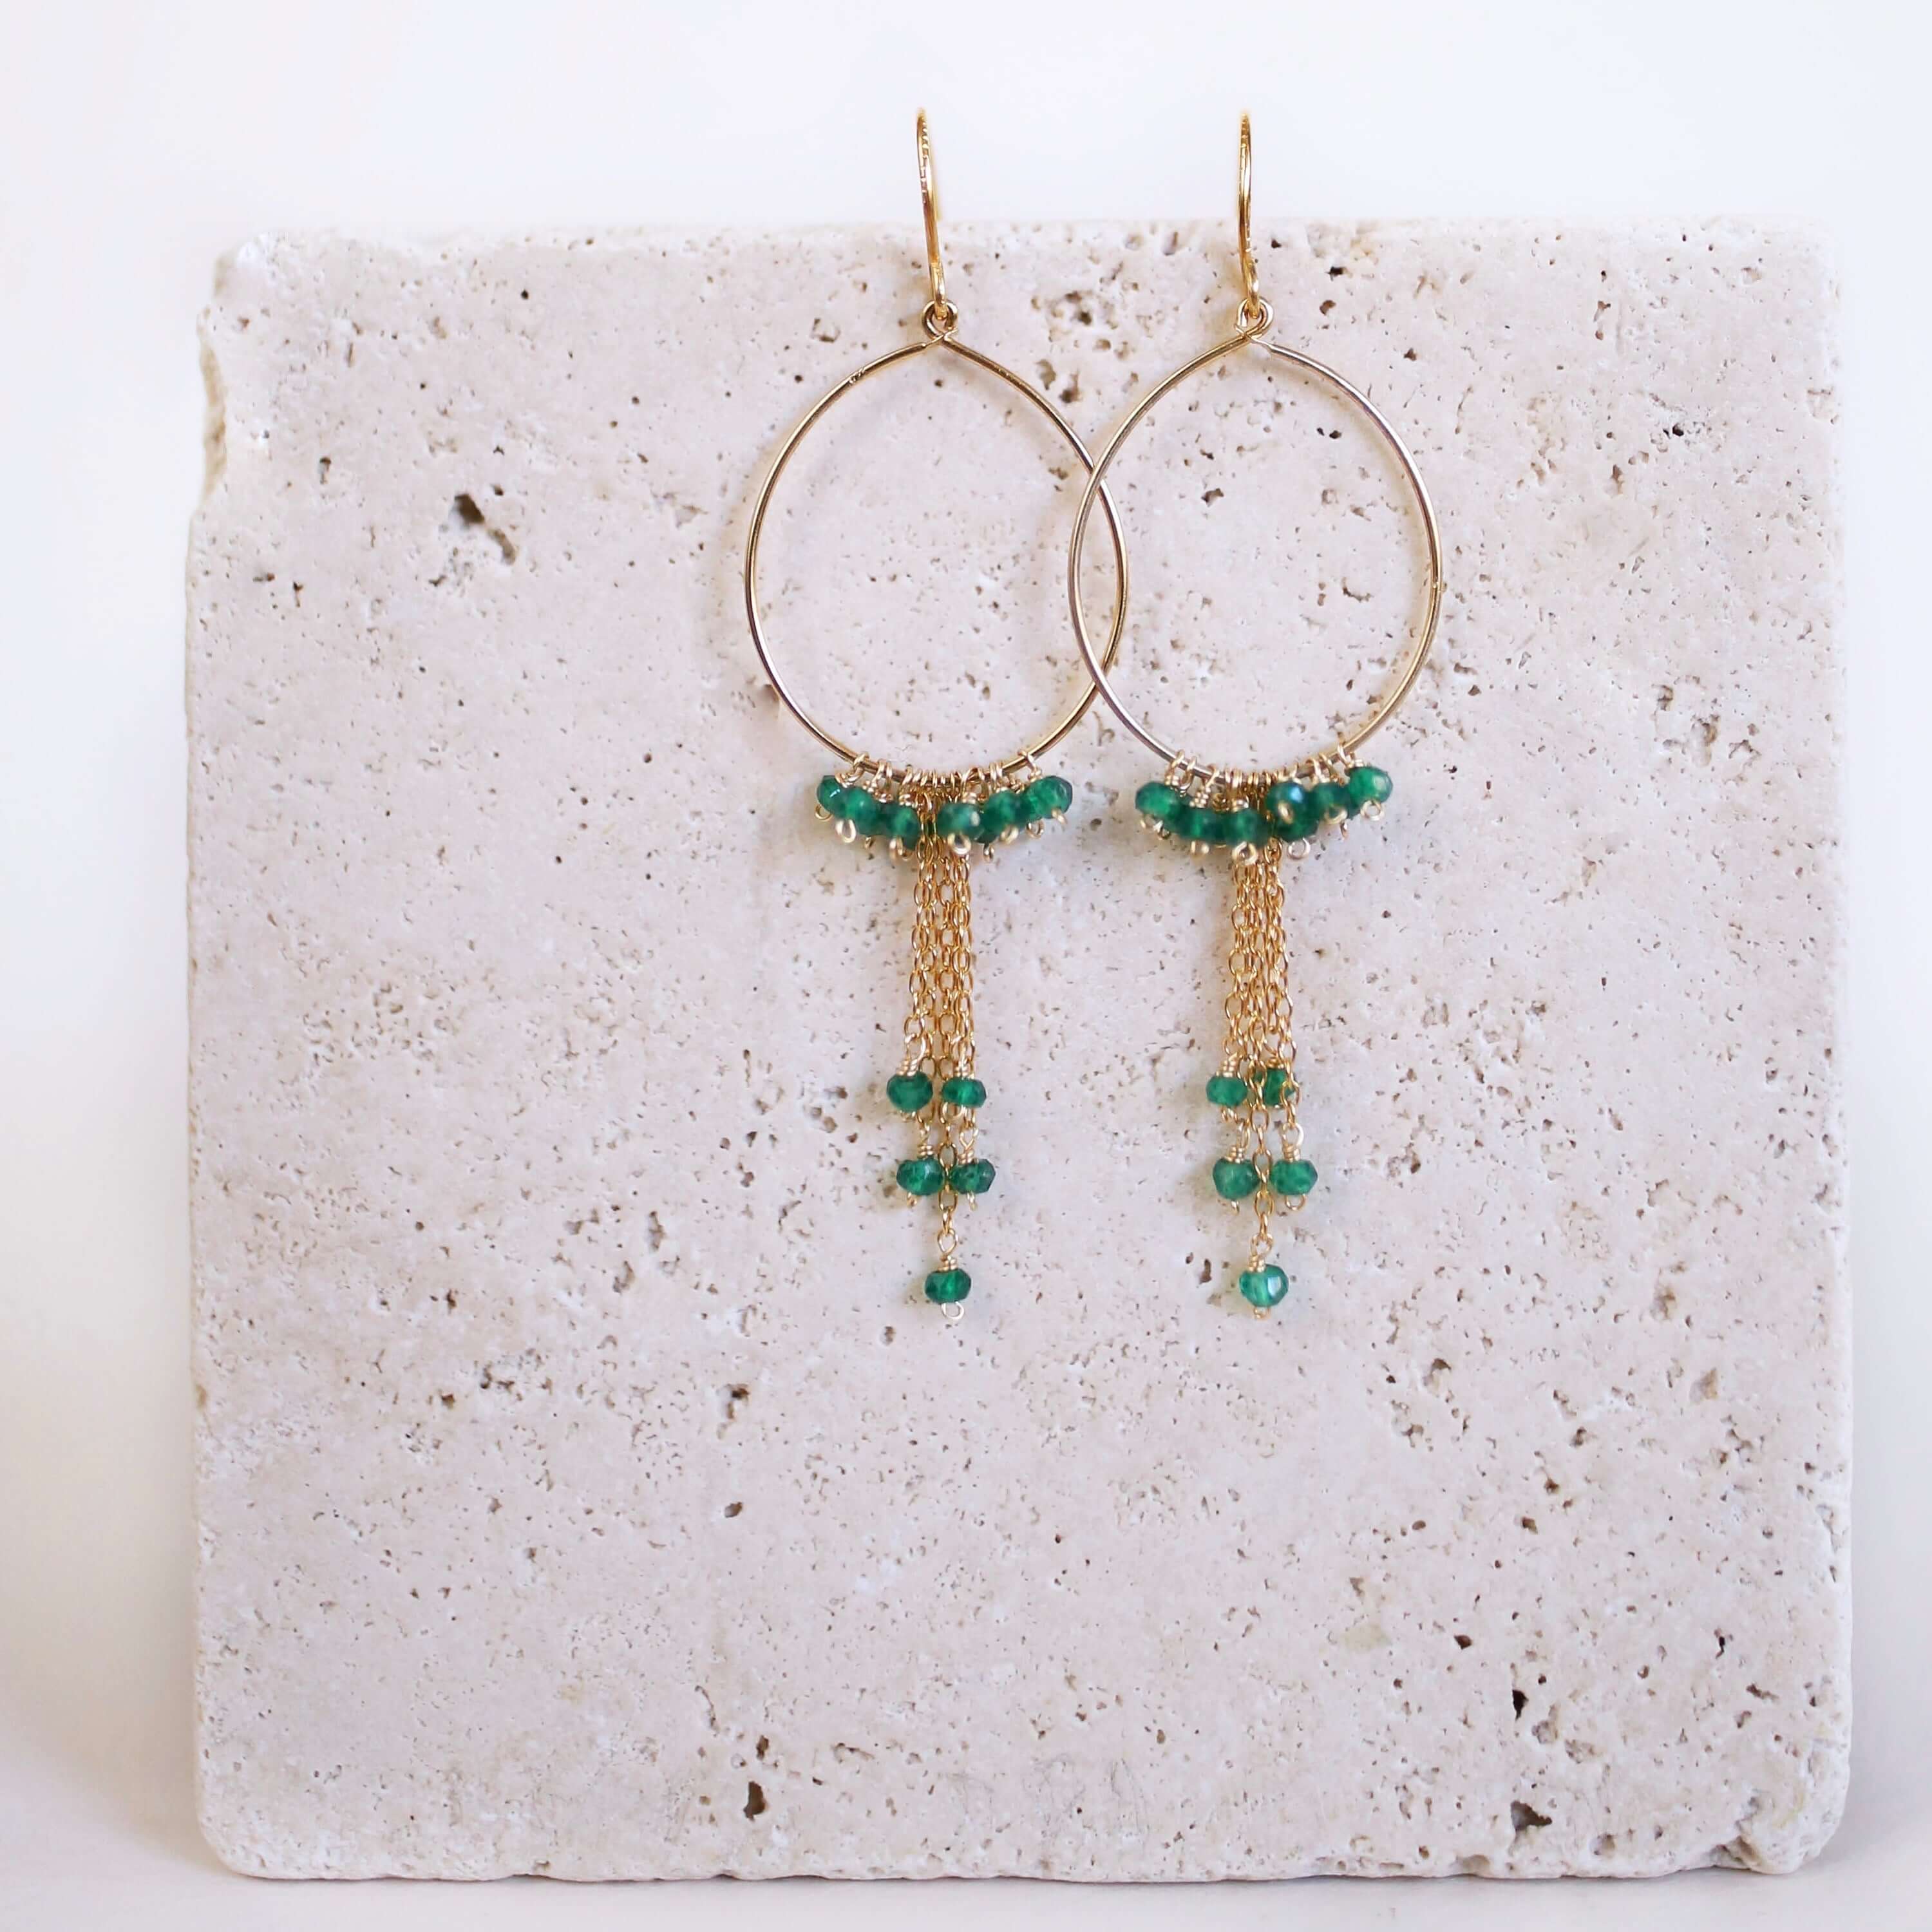 Stylish Green Gemstone Earrings on Lightweight Hoops